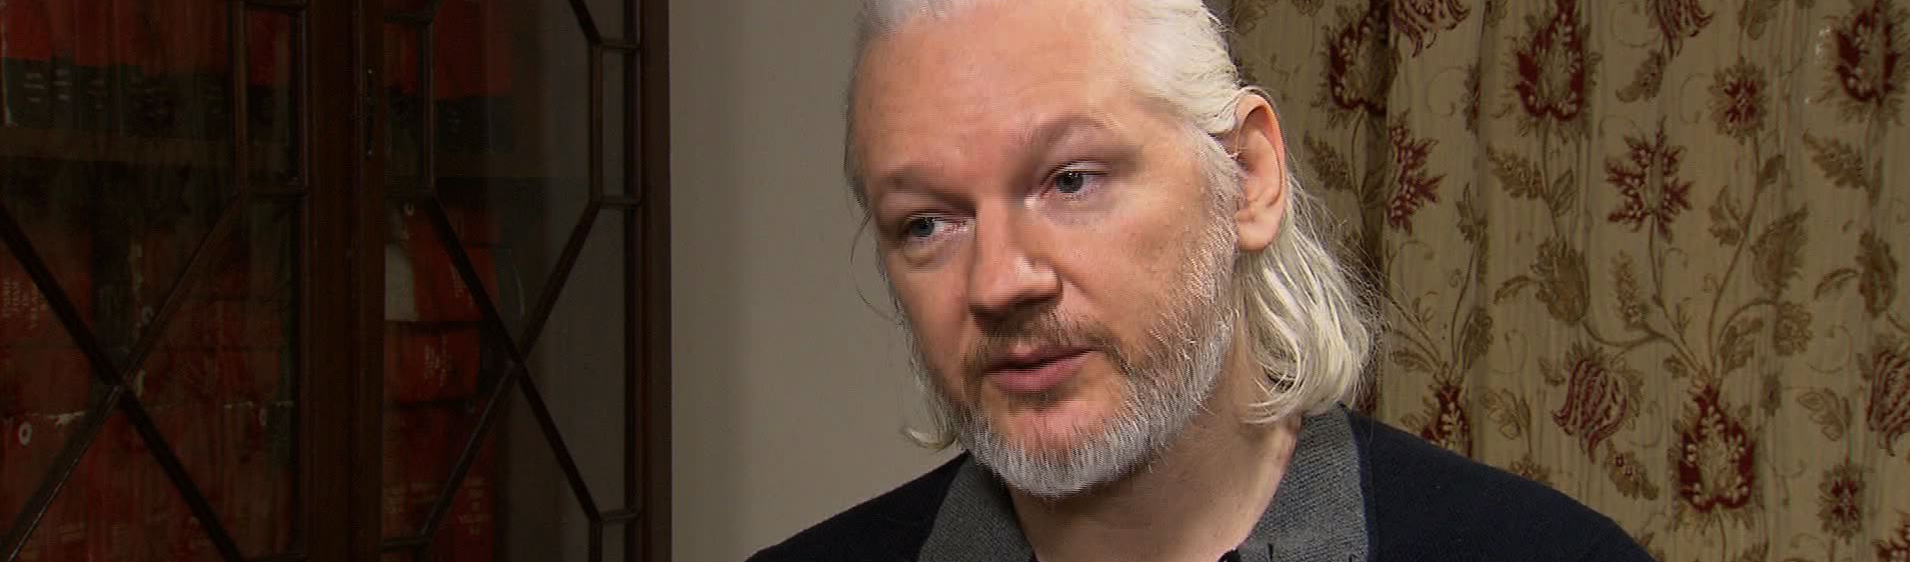 “Mundo precisa saber o que está acontecendo”, diz diretor de doc sobre Assange